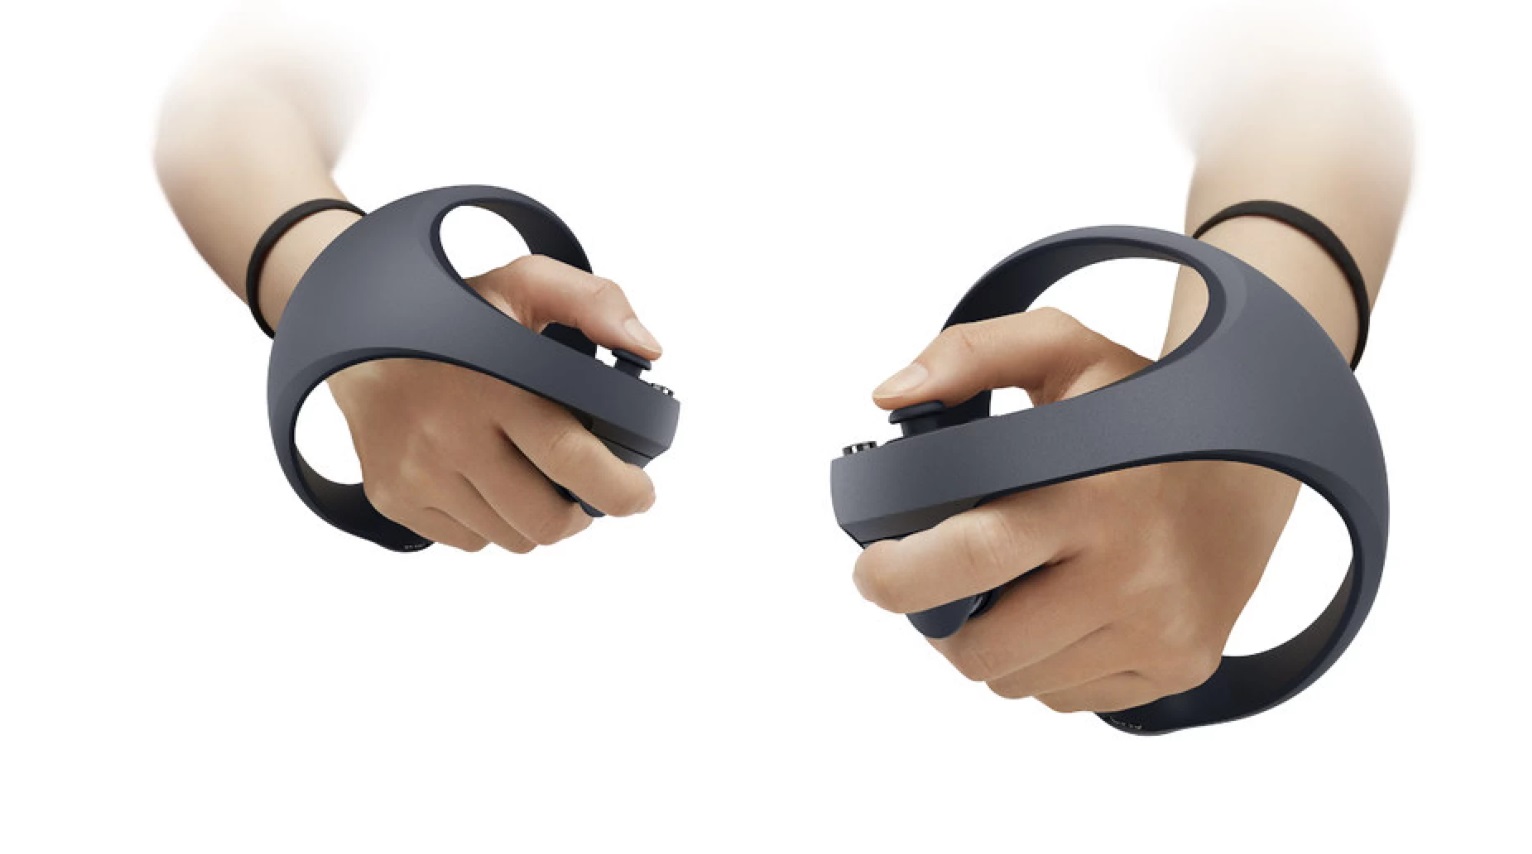 VR-гарнитура следующего поколения: Sony анонсировала PlayStation VR2